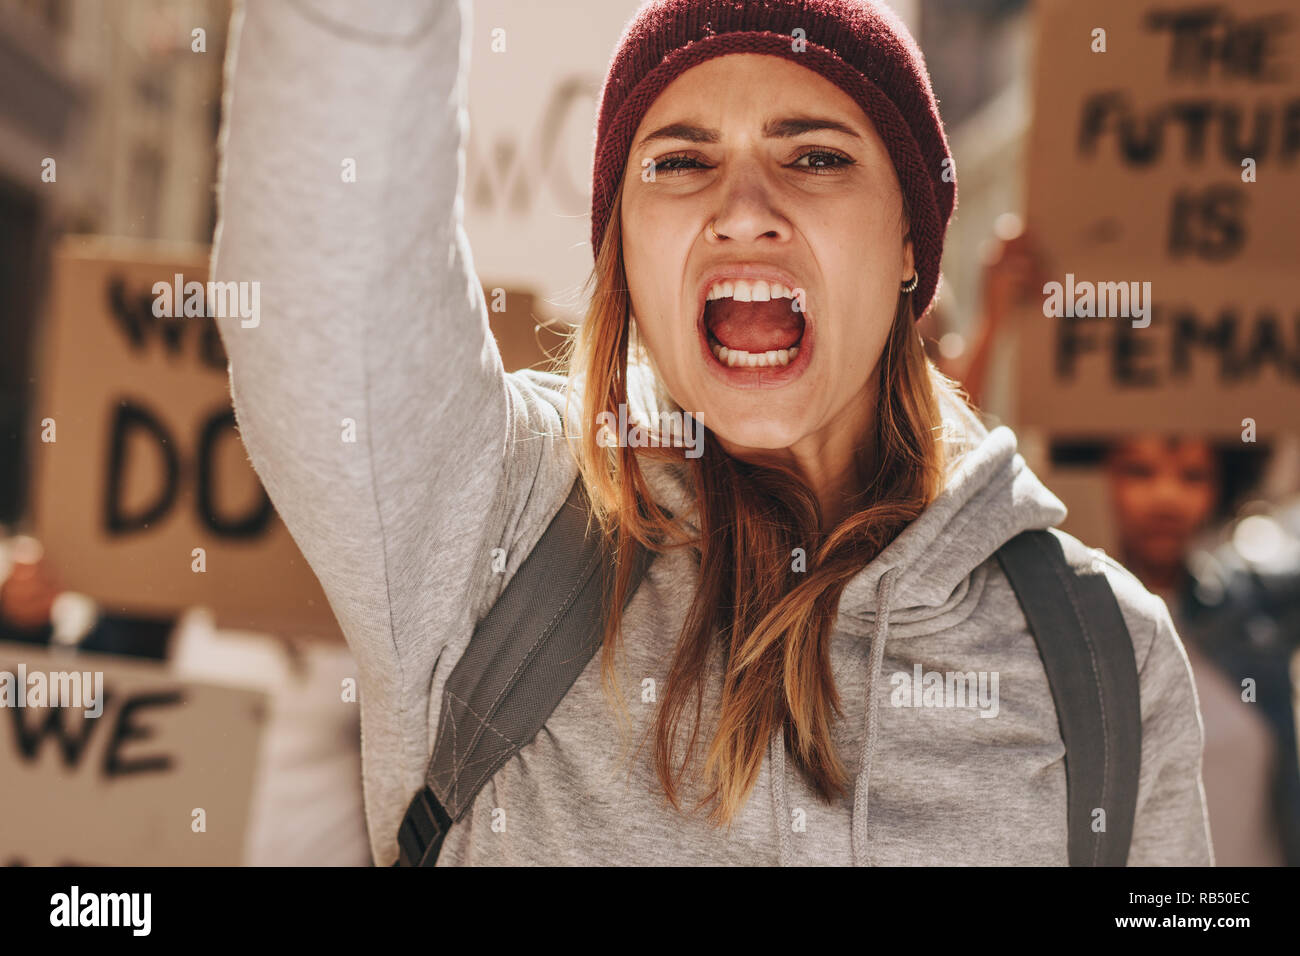 In der Nähe der weiblichen Demonstrantin, die einen Slogan mit einer Gruppe von Menschen im Hintergrund. Frau protestieren für ihre Emanzipation und die Zukunft. Stockfoto